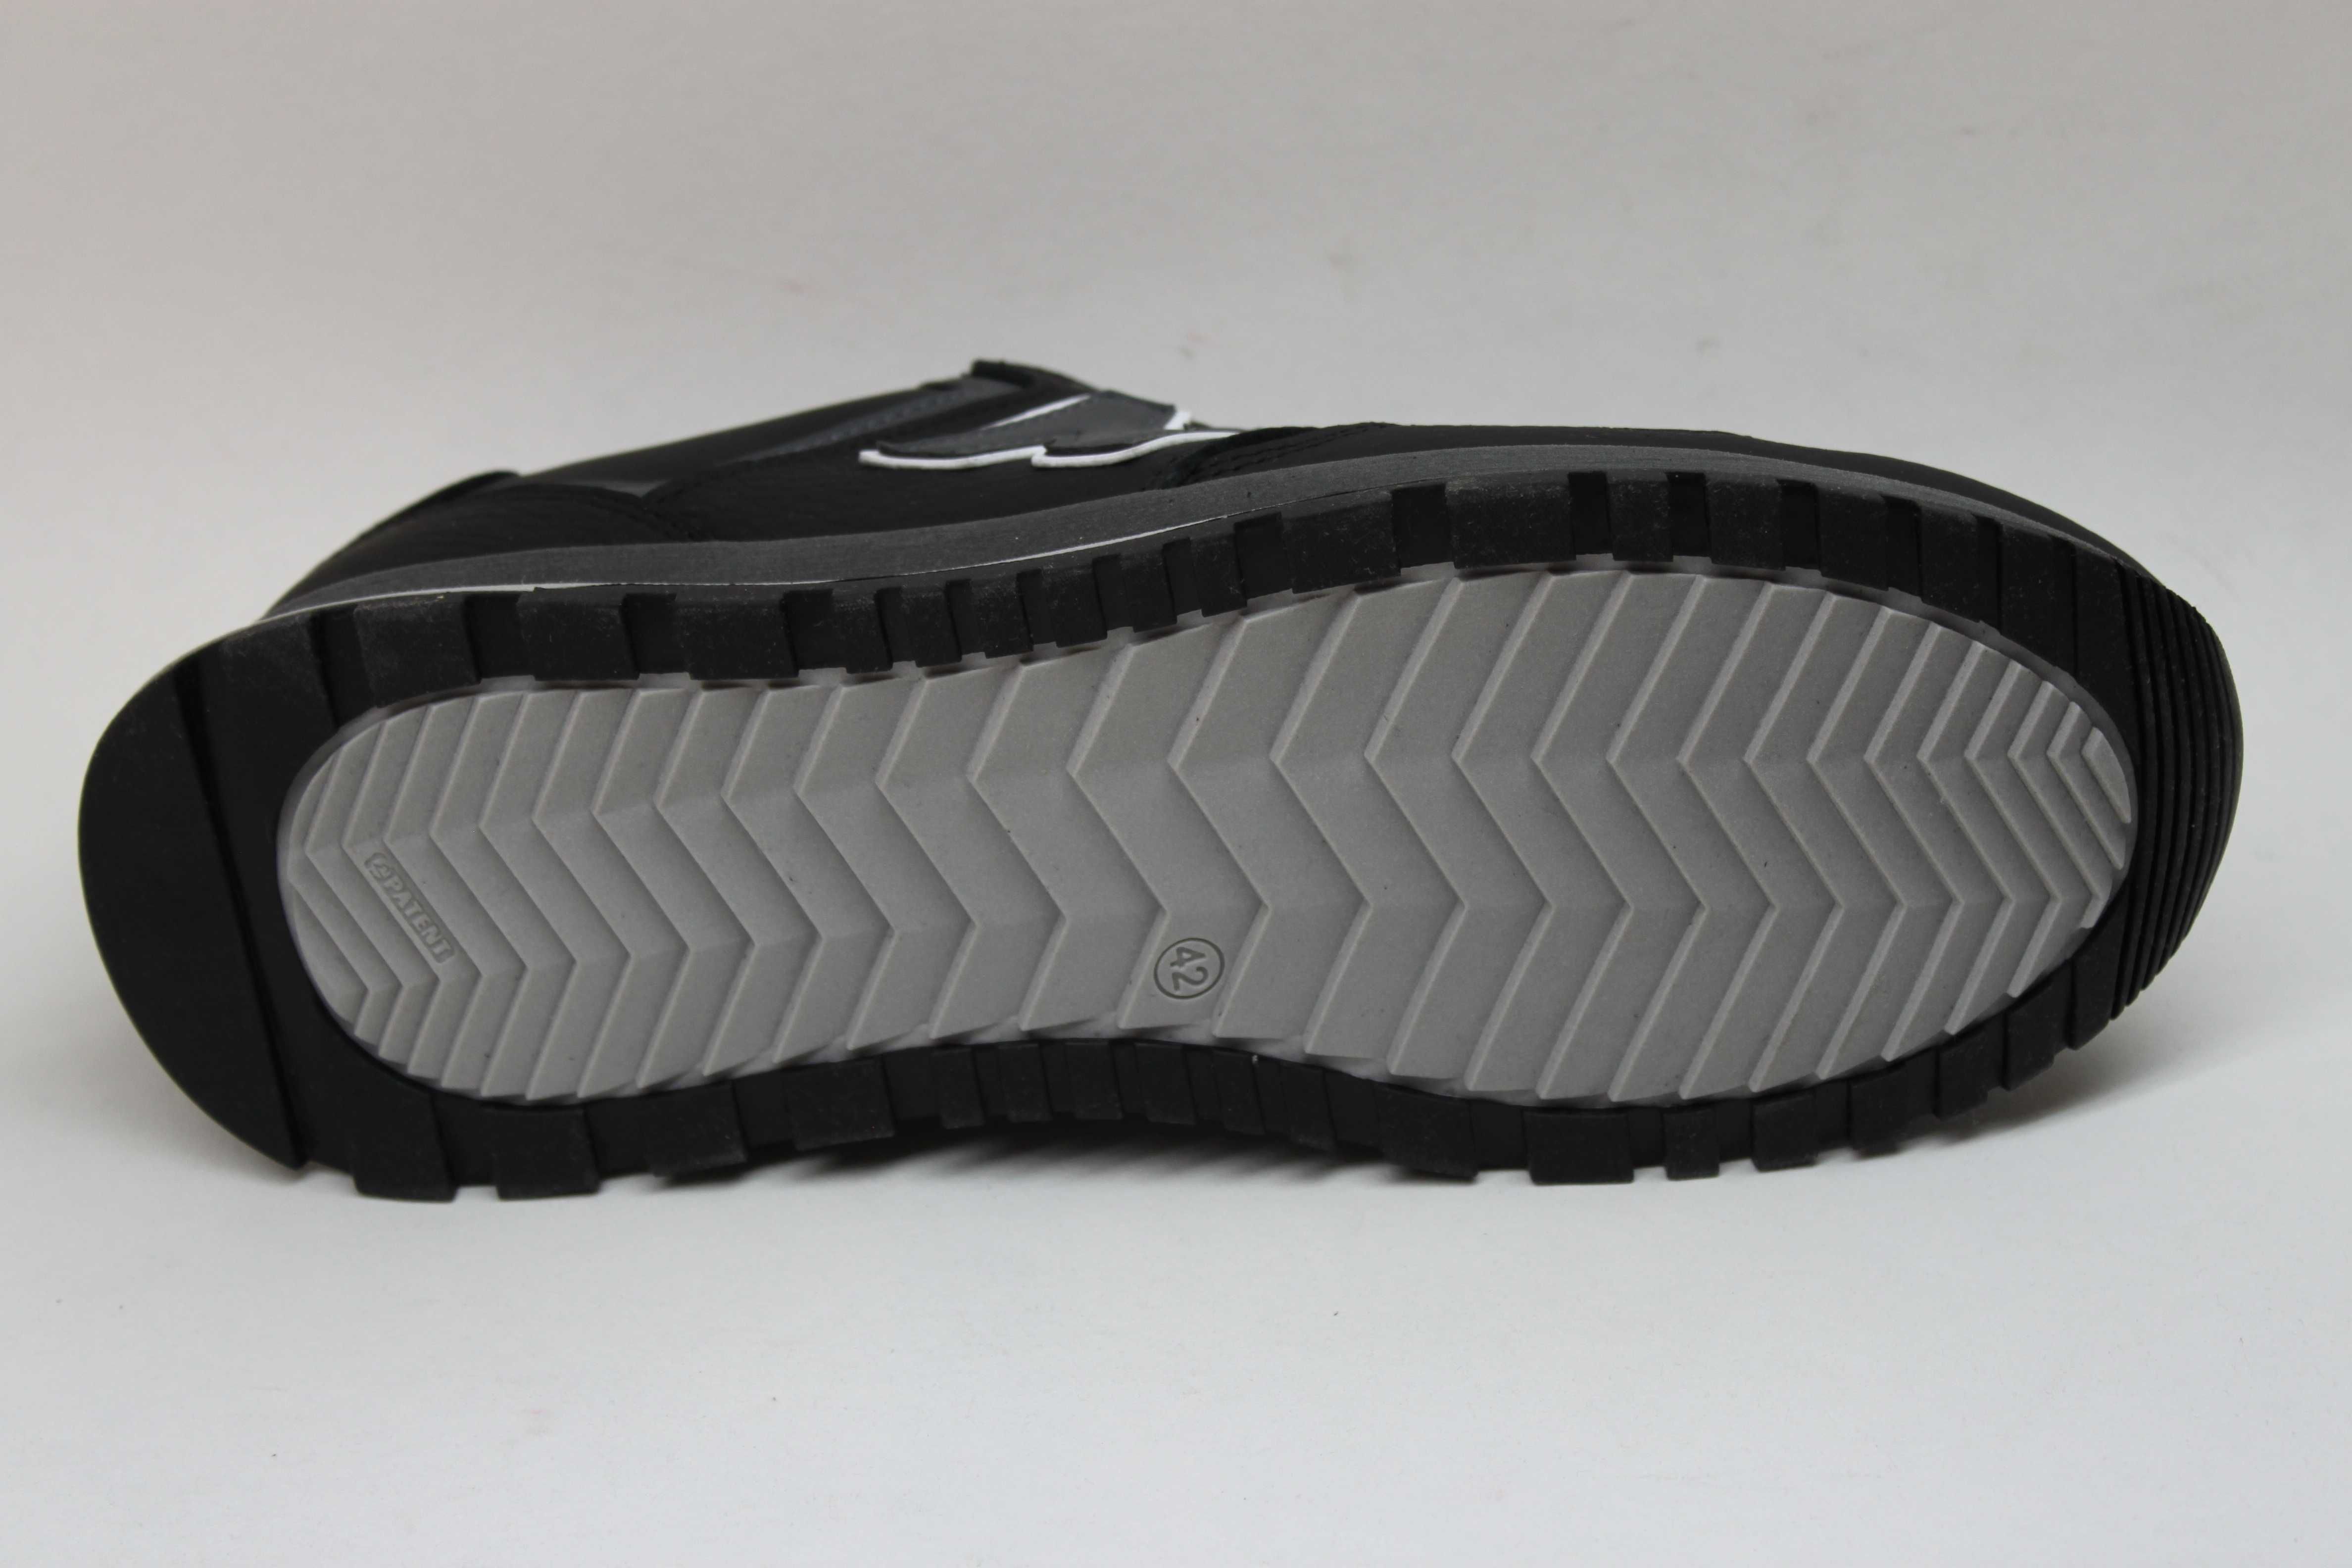 Кроссовки - туфли - кросівки New Balance кожаные (код: 12-18чер/сер)